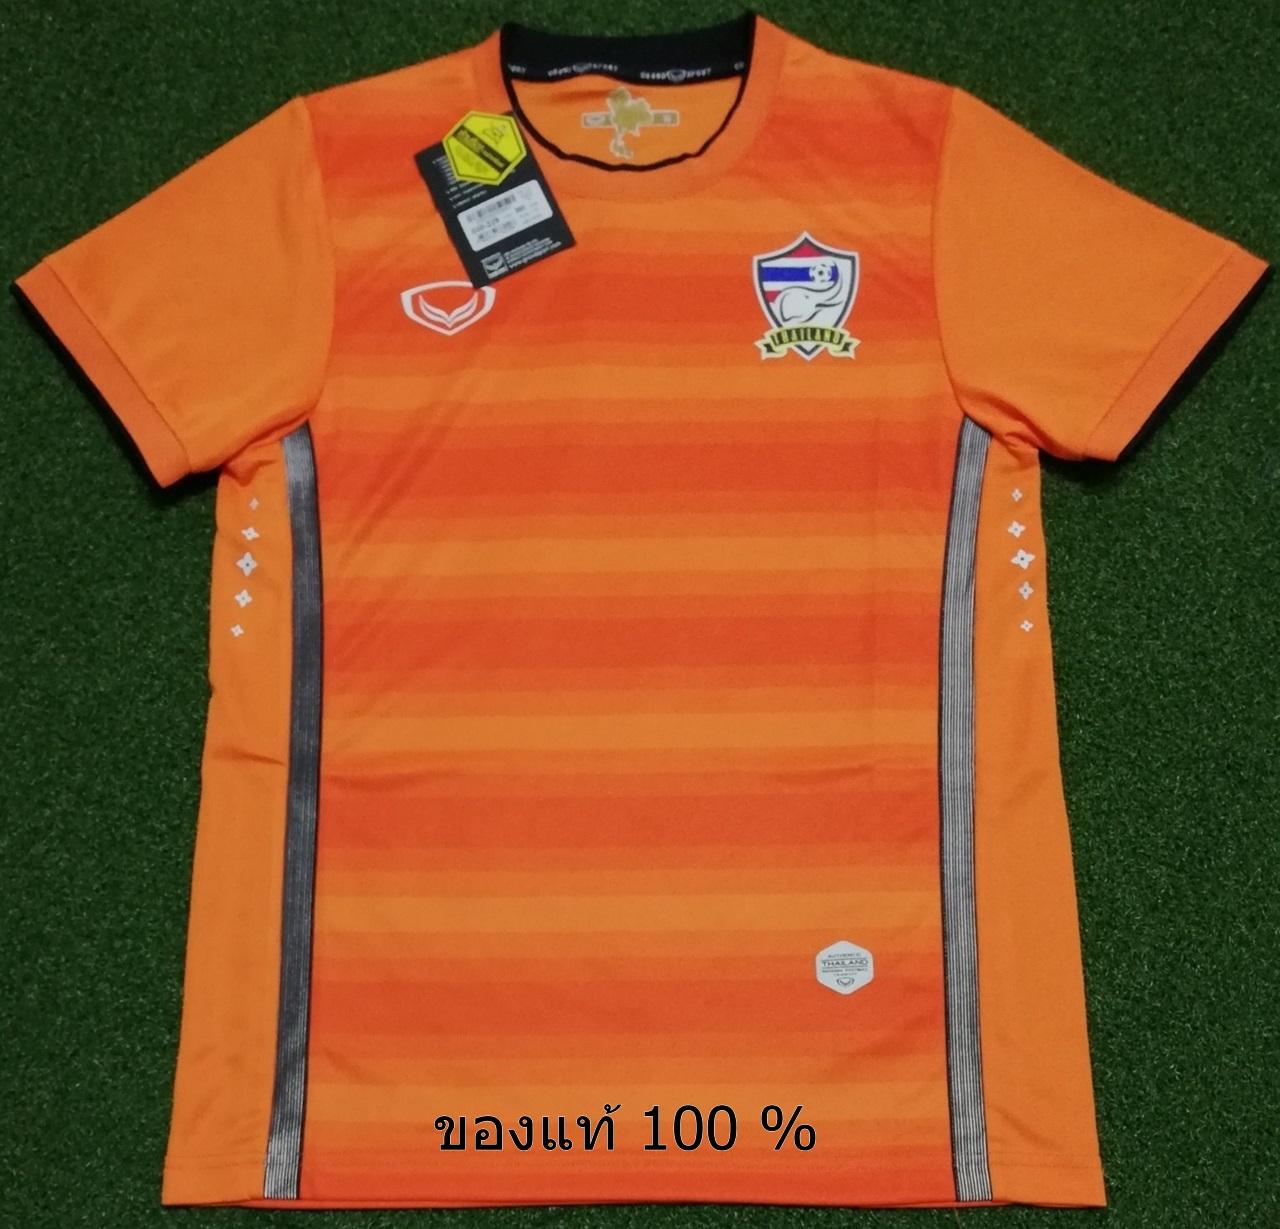 เสื้อฟุตบอล เกรดนักเตะ ทีมชาติไทย ช้างศึก ชุดผู้รักษาประตู 2014-16 สีส้ม ใหม่ ของแท้ป้ายห้อย เสื้อกีฬา